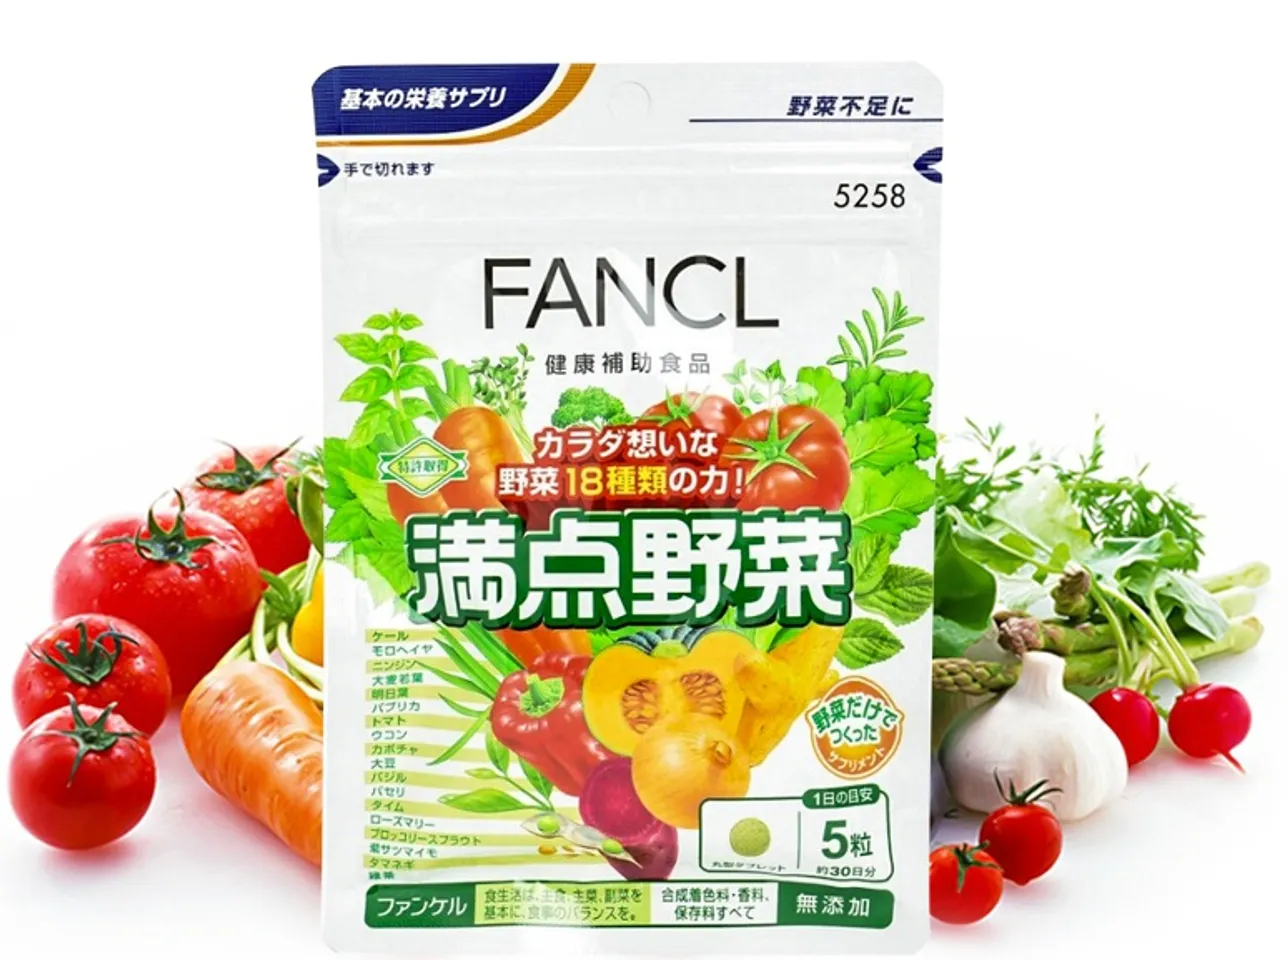 Viên uống bổ sung 18 loại rau củ quả Fancl 1